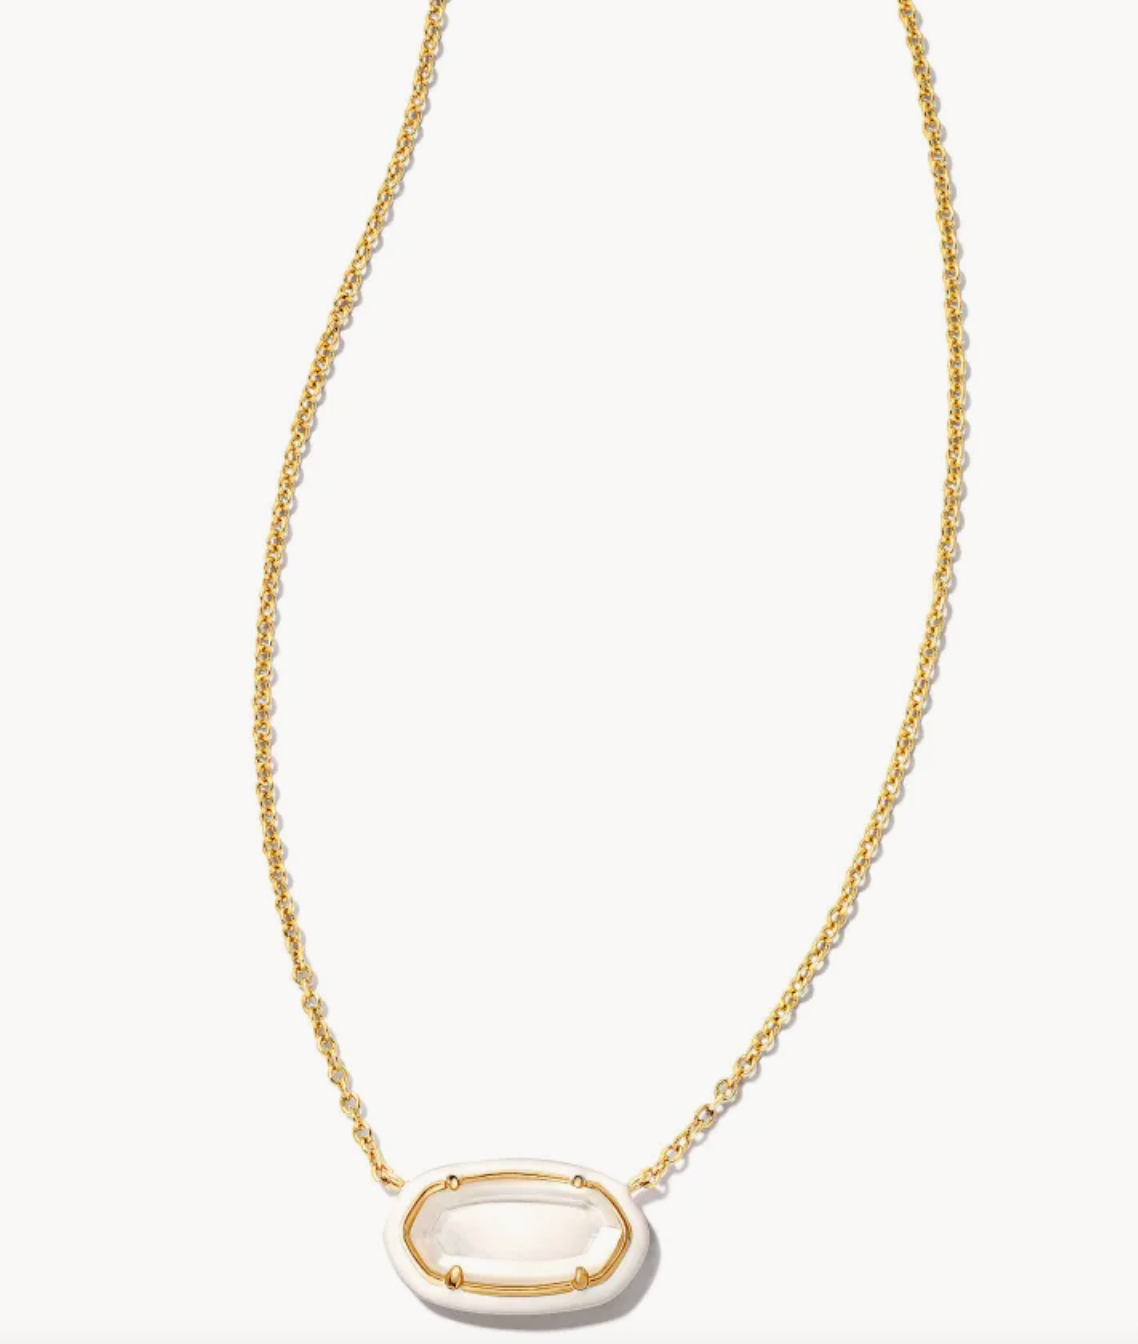 Kendra Scott Elisa Gold Enamel Framed Short Pendant Necklace in Ivory Mother of Pearl